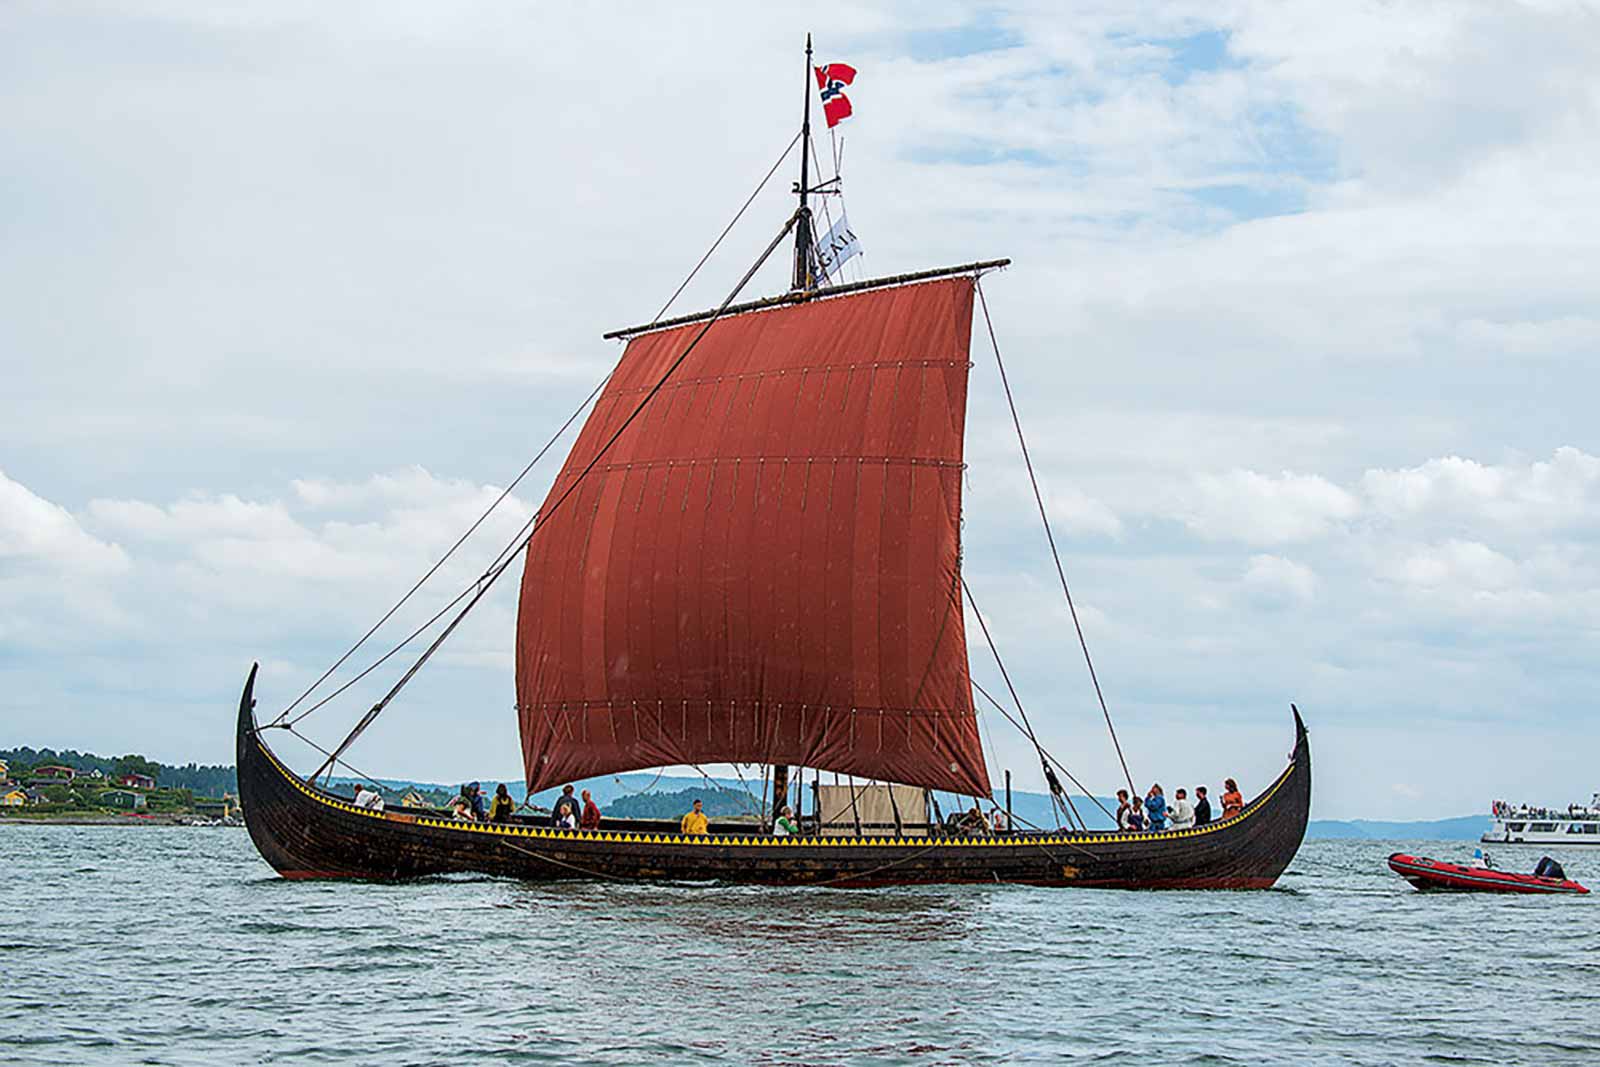 Drakkar viking Gaîa avec voile rouge, naviguant sur l'océan.